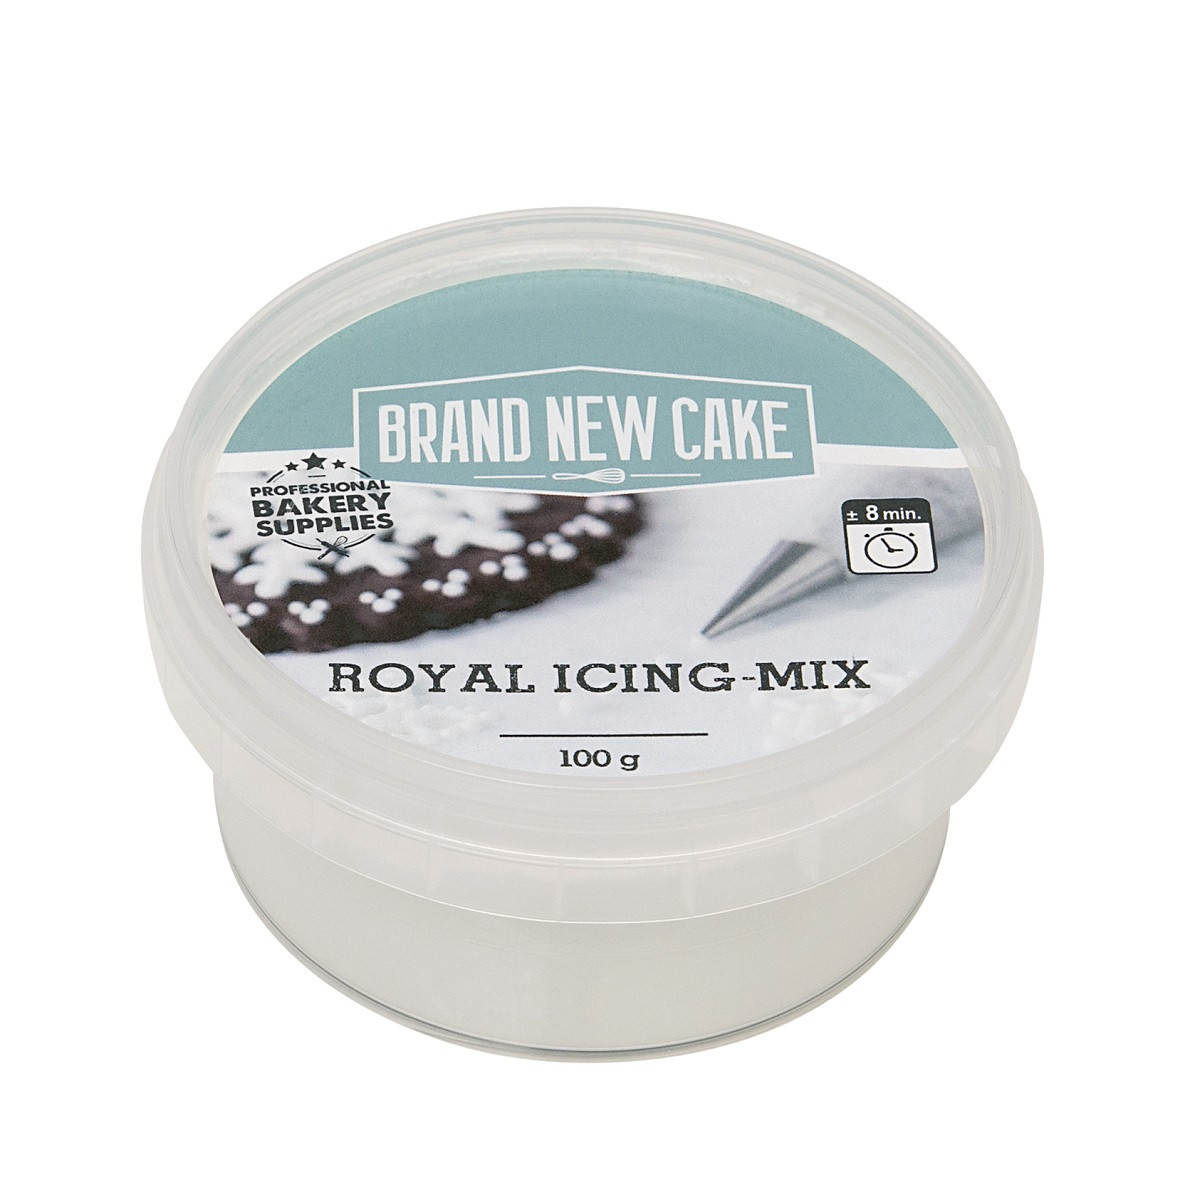 BrandNewCake Royal Icing-mix 100g